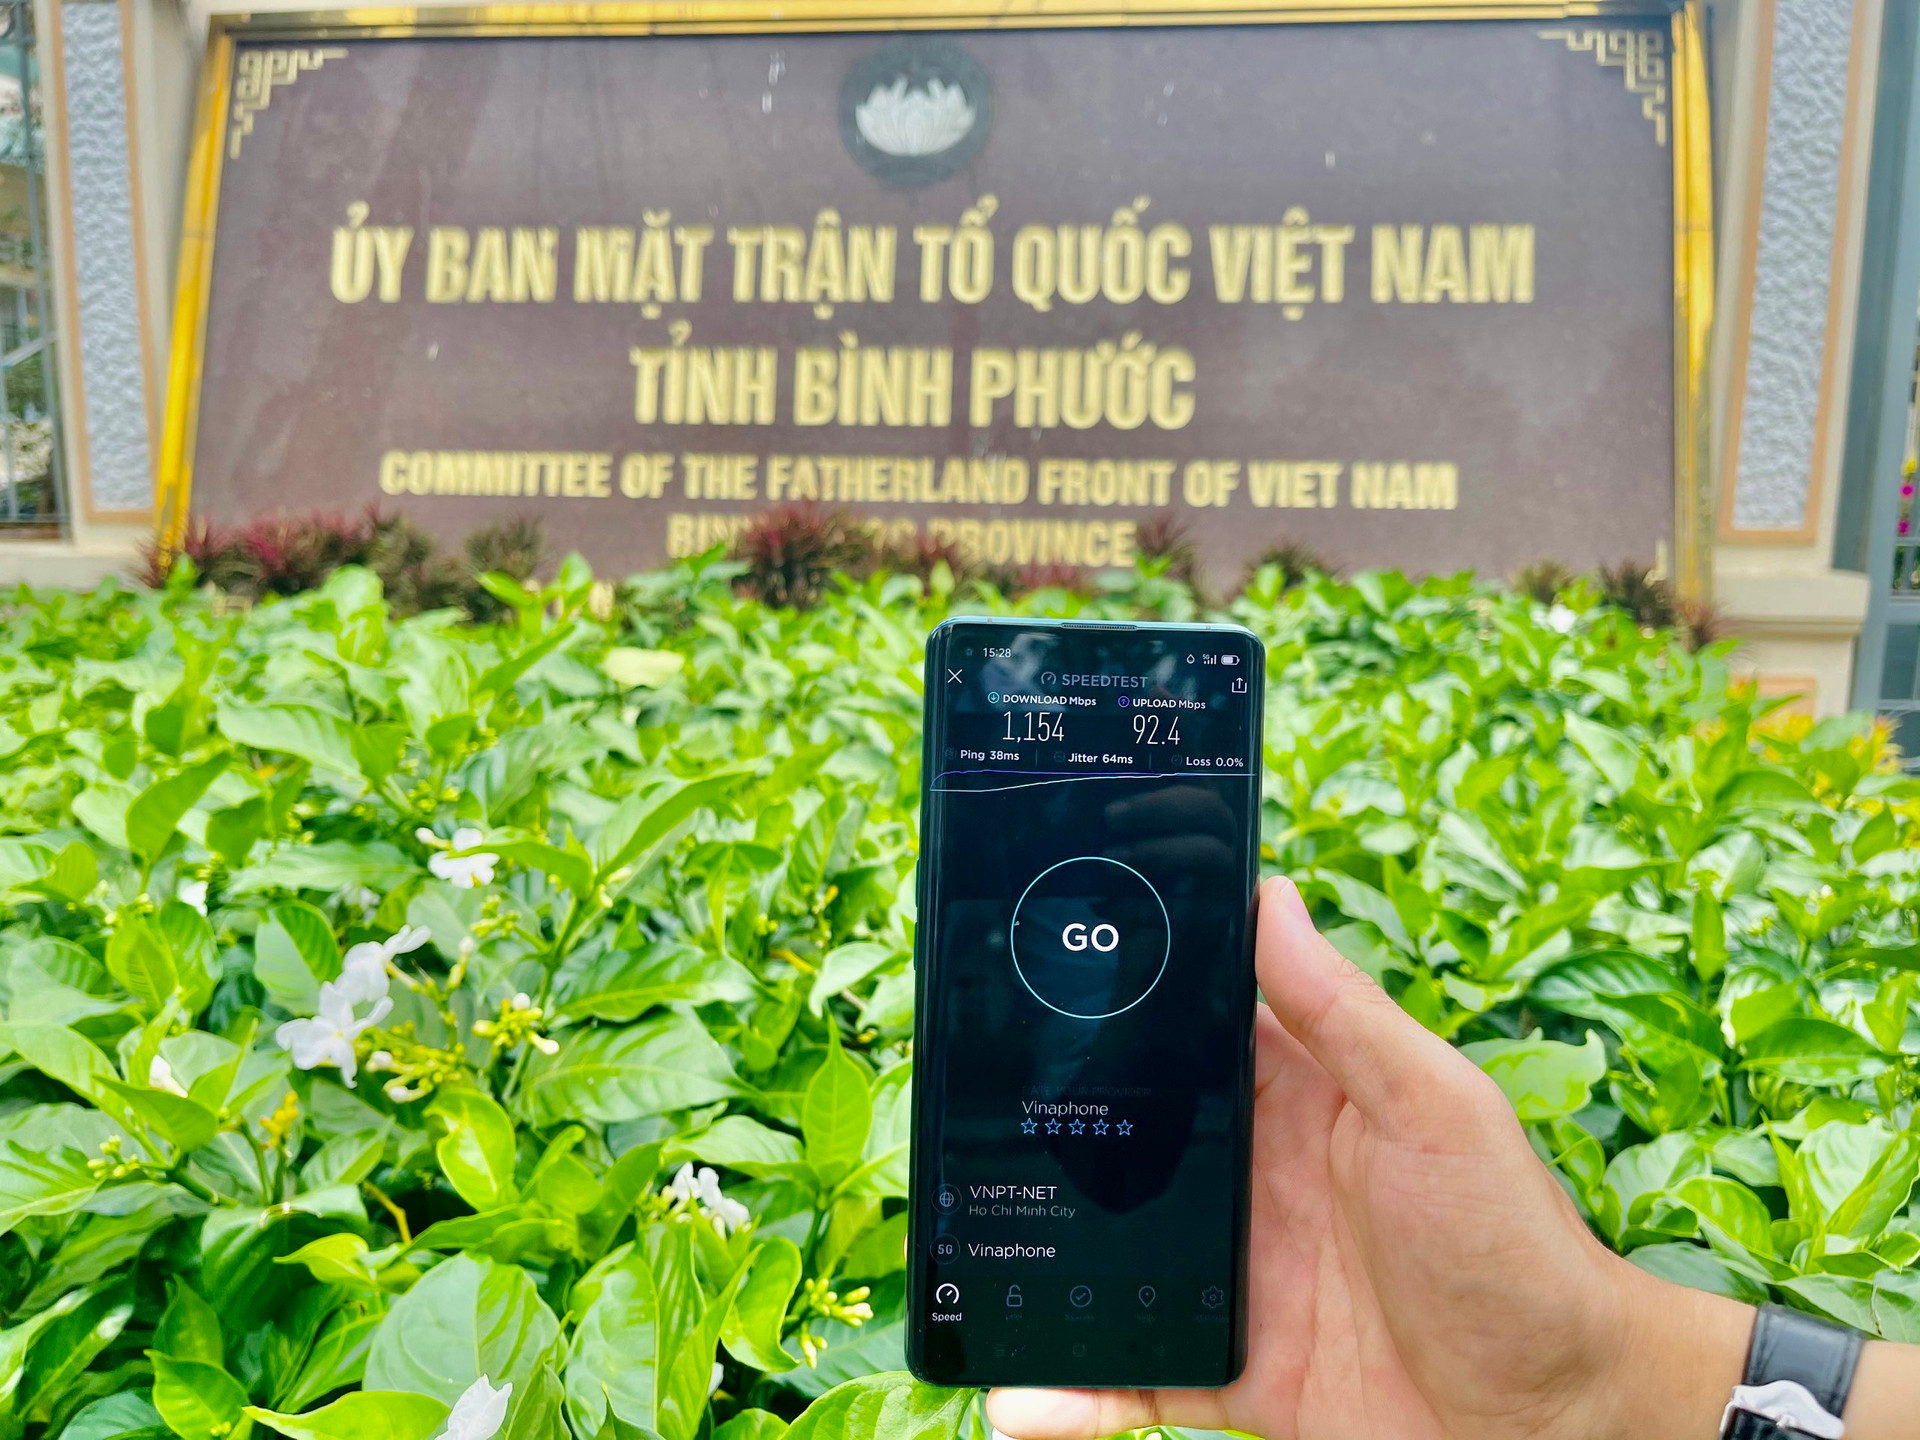 Sóng 5G phủ tại Bình Phước, người dân trải nghiệm dịp Tết - Ảnh 1.